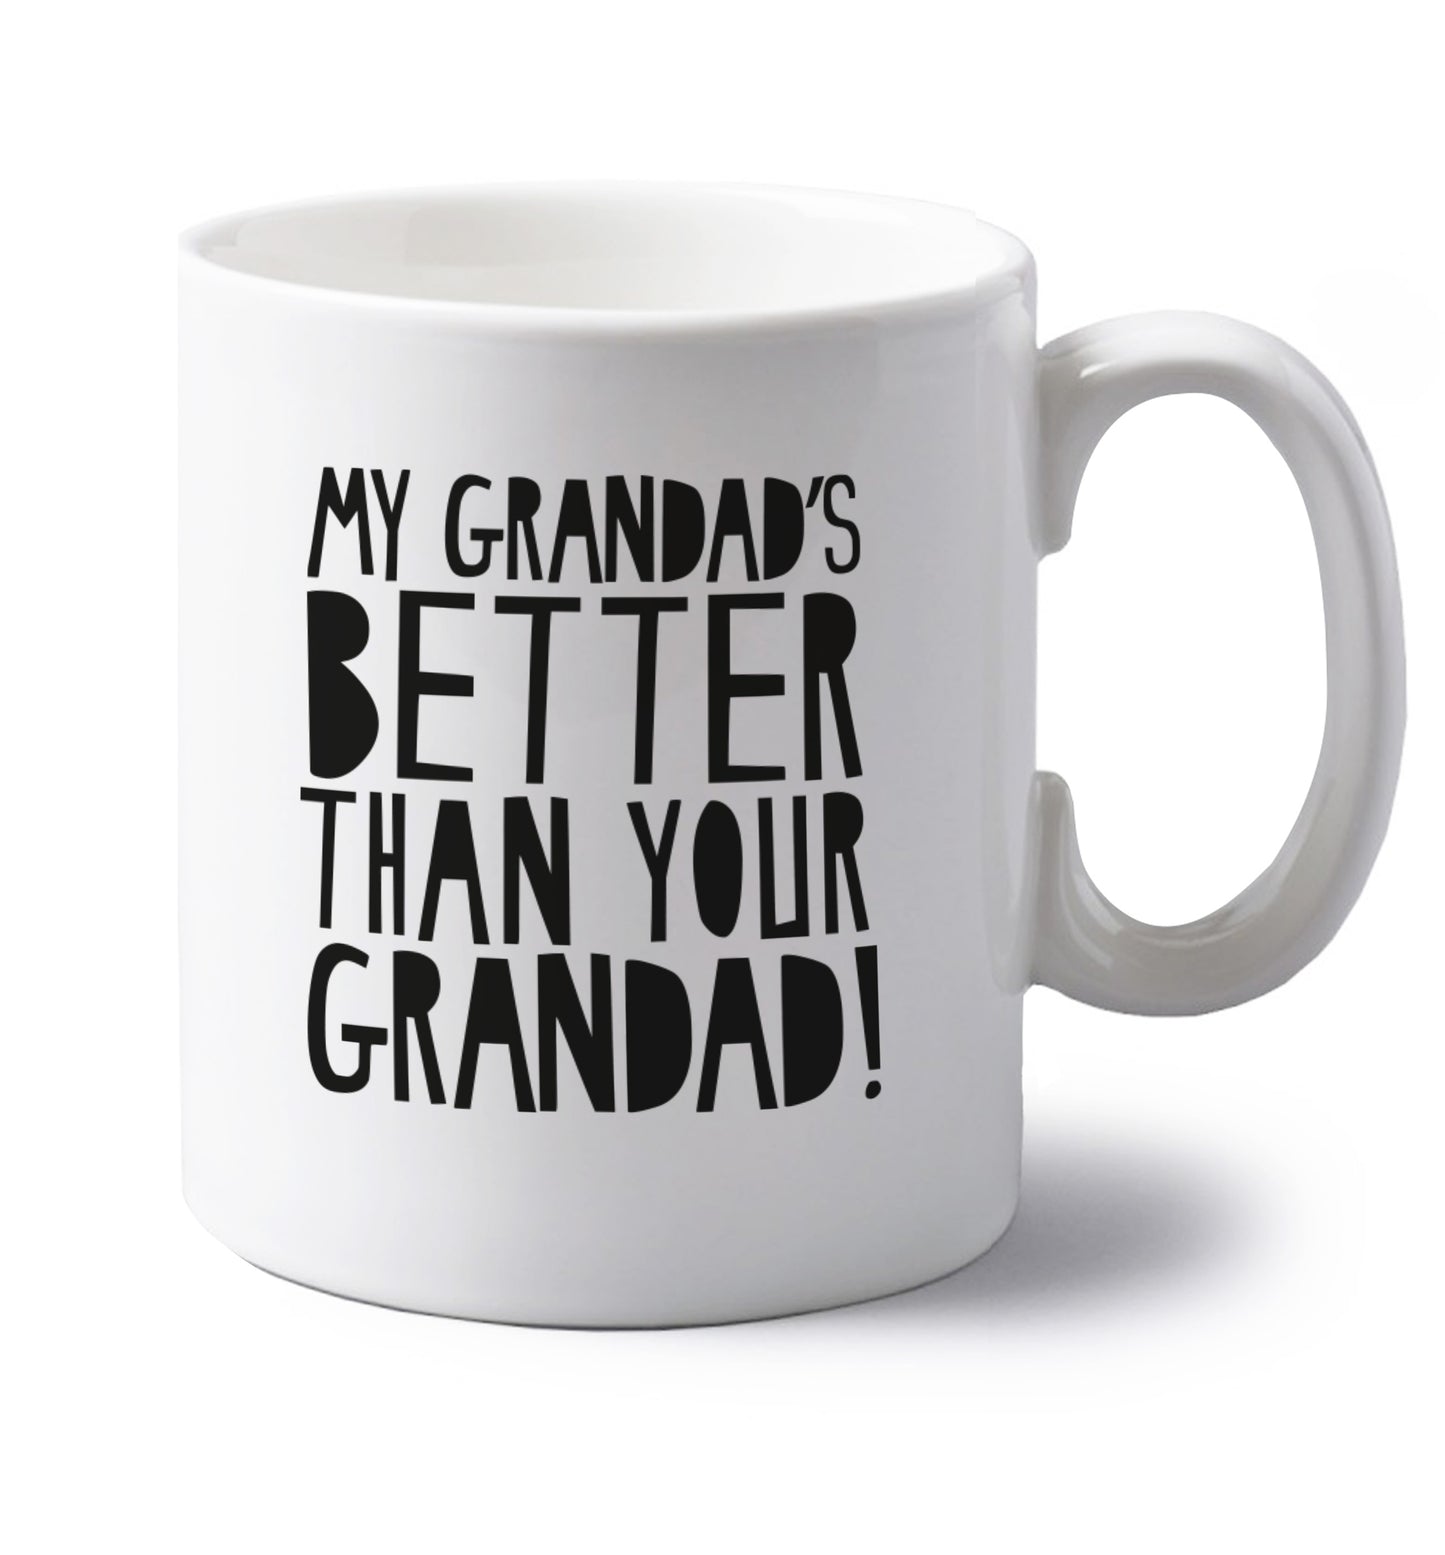 My Grandad's better than your grandad left handed white ceramic mug 